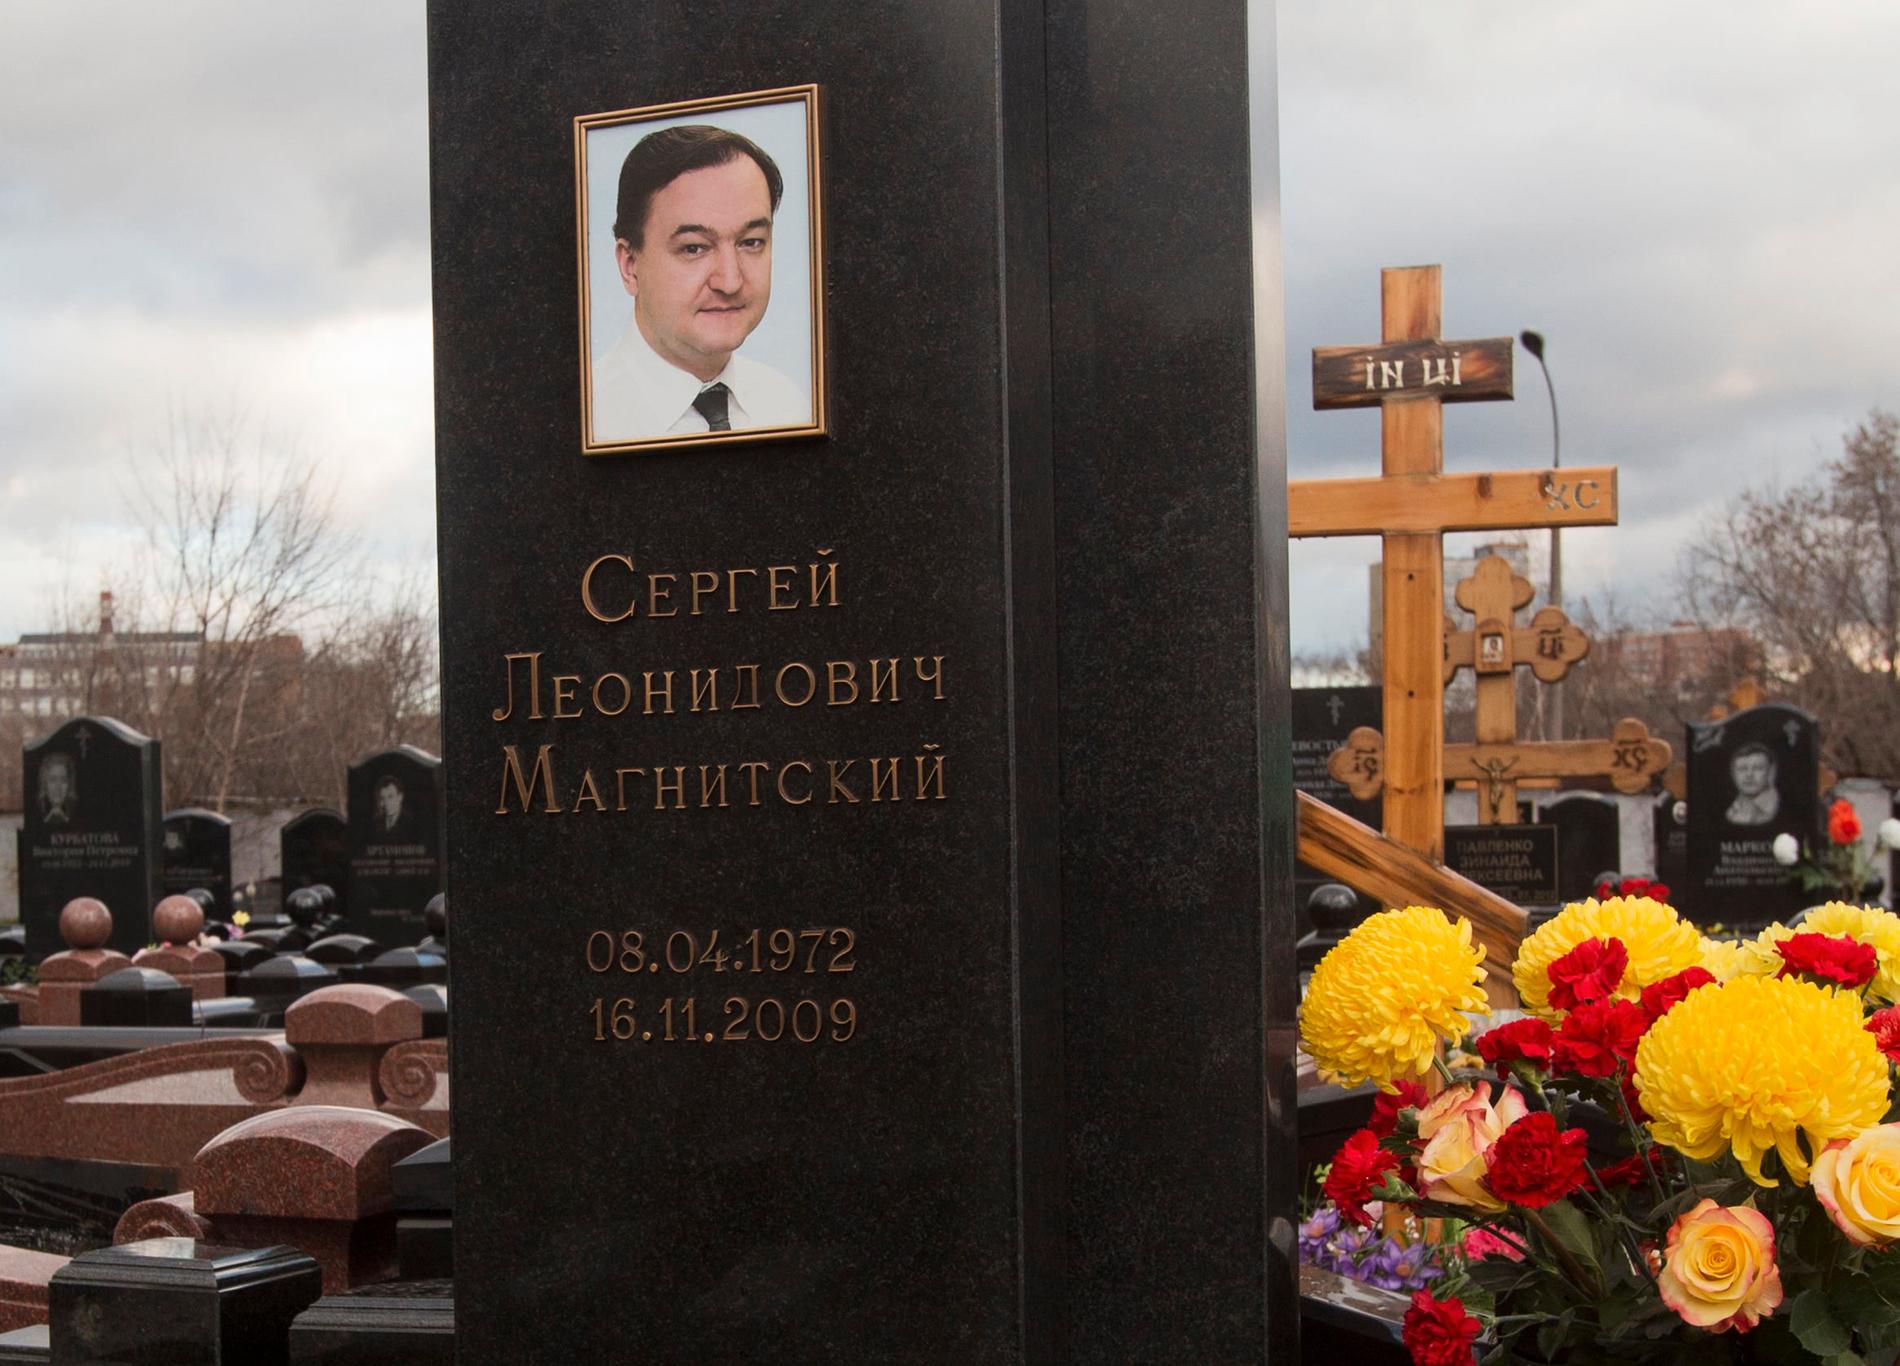 Skatterevisorn Sergej Magnitskij avslöjade en miljardkupp och dog i häkte under oklara omständigheter.